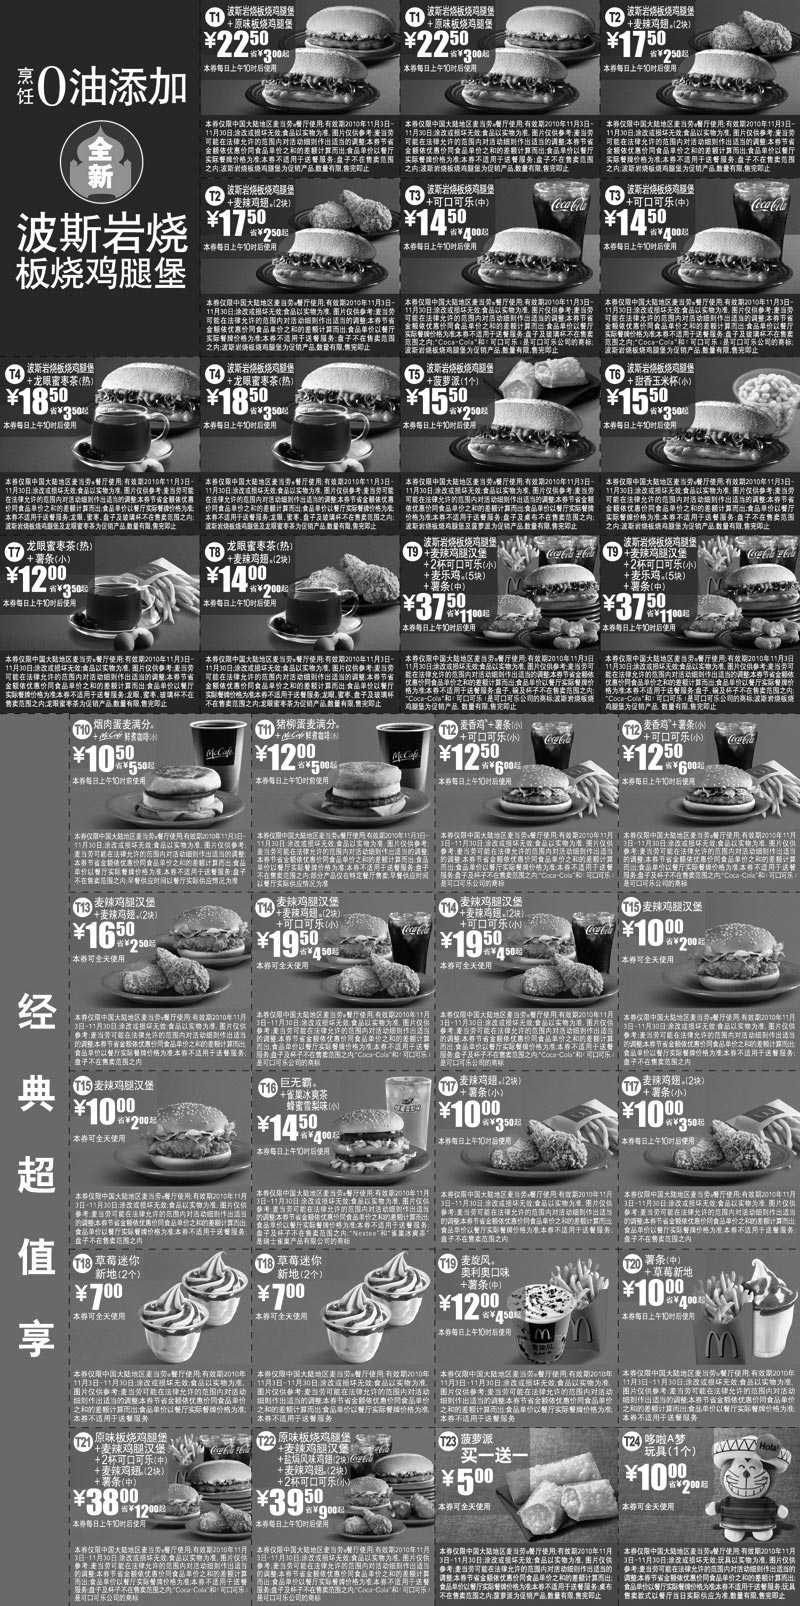 麦当劳优惠券:麦当劳电子优惠券2010年11月整张打印版本,所有优惠券打印于1张A4纸 有效期2010年11月03日-2010年11月30日 使用范围:中国大陆麦当劳餐厅